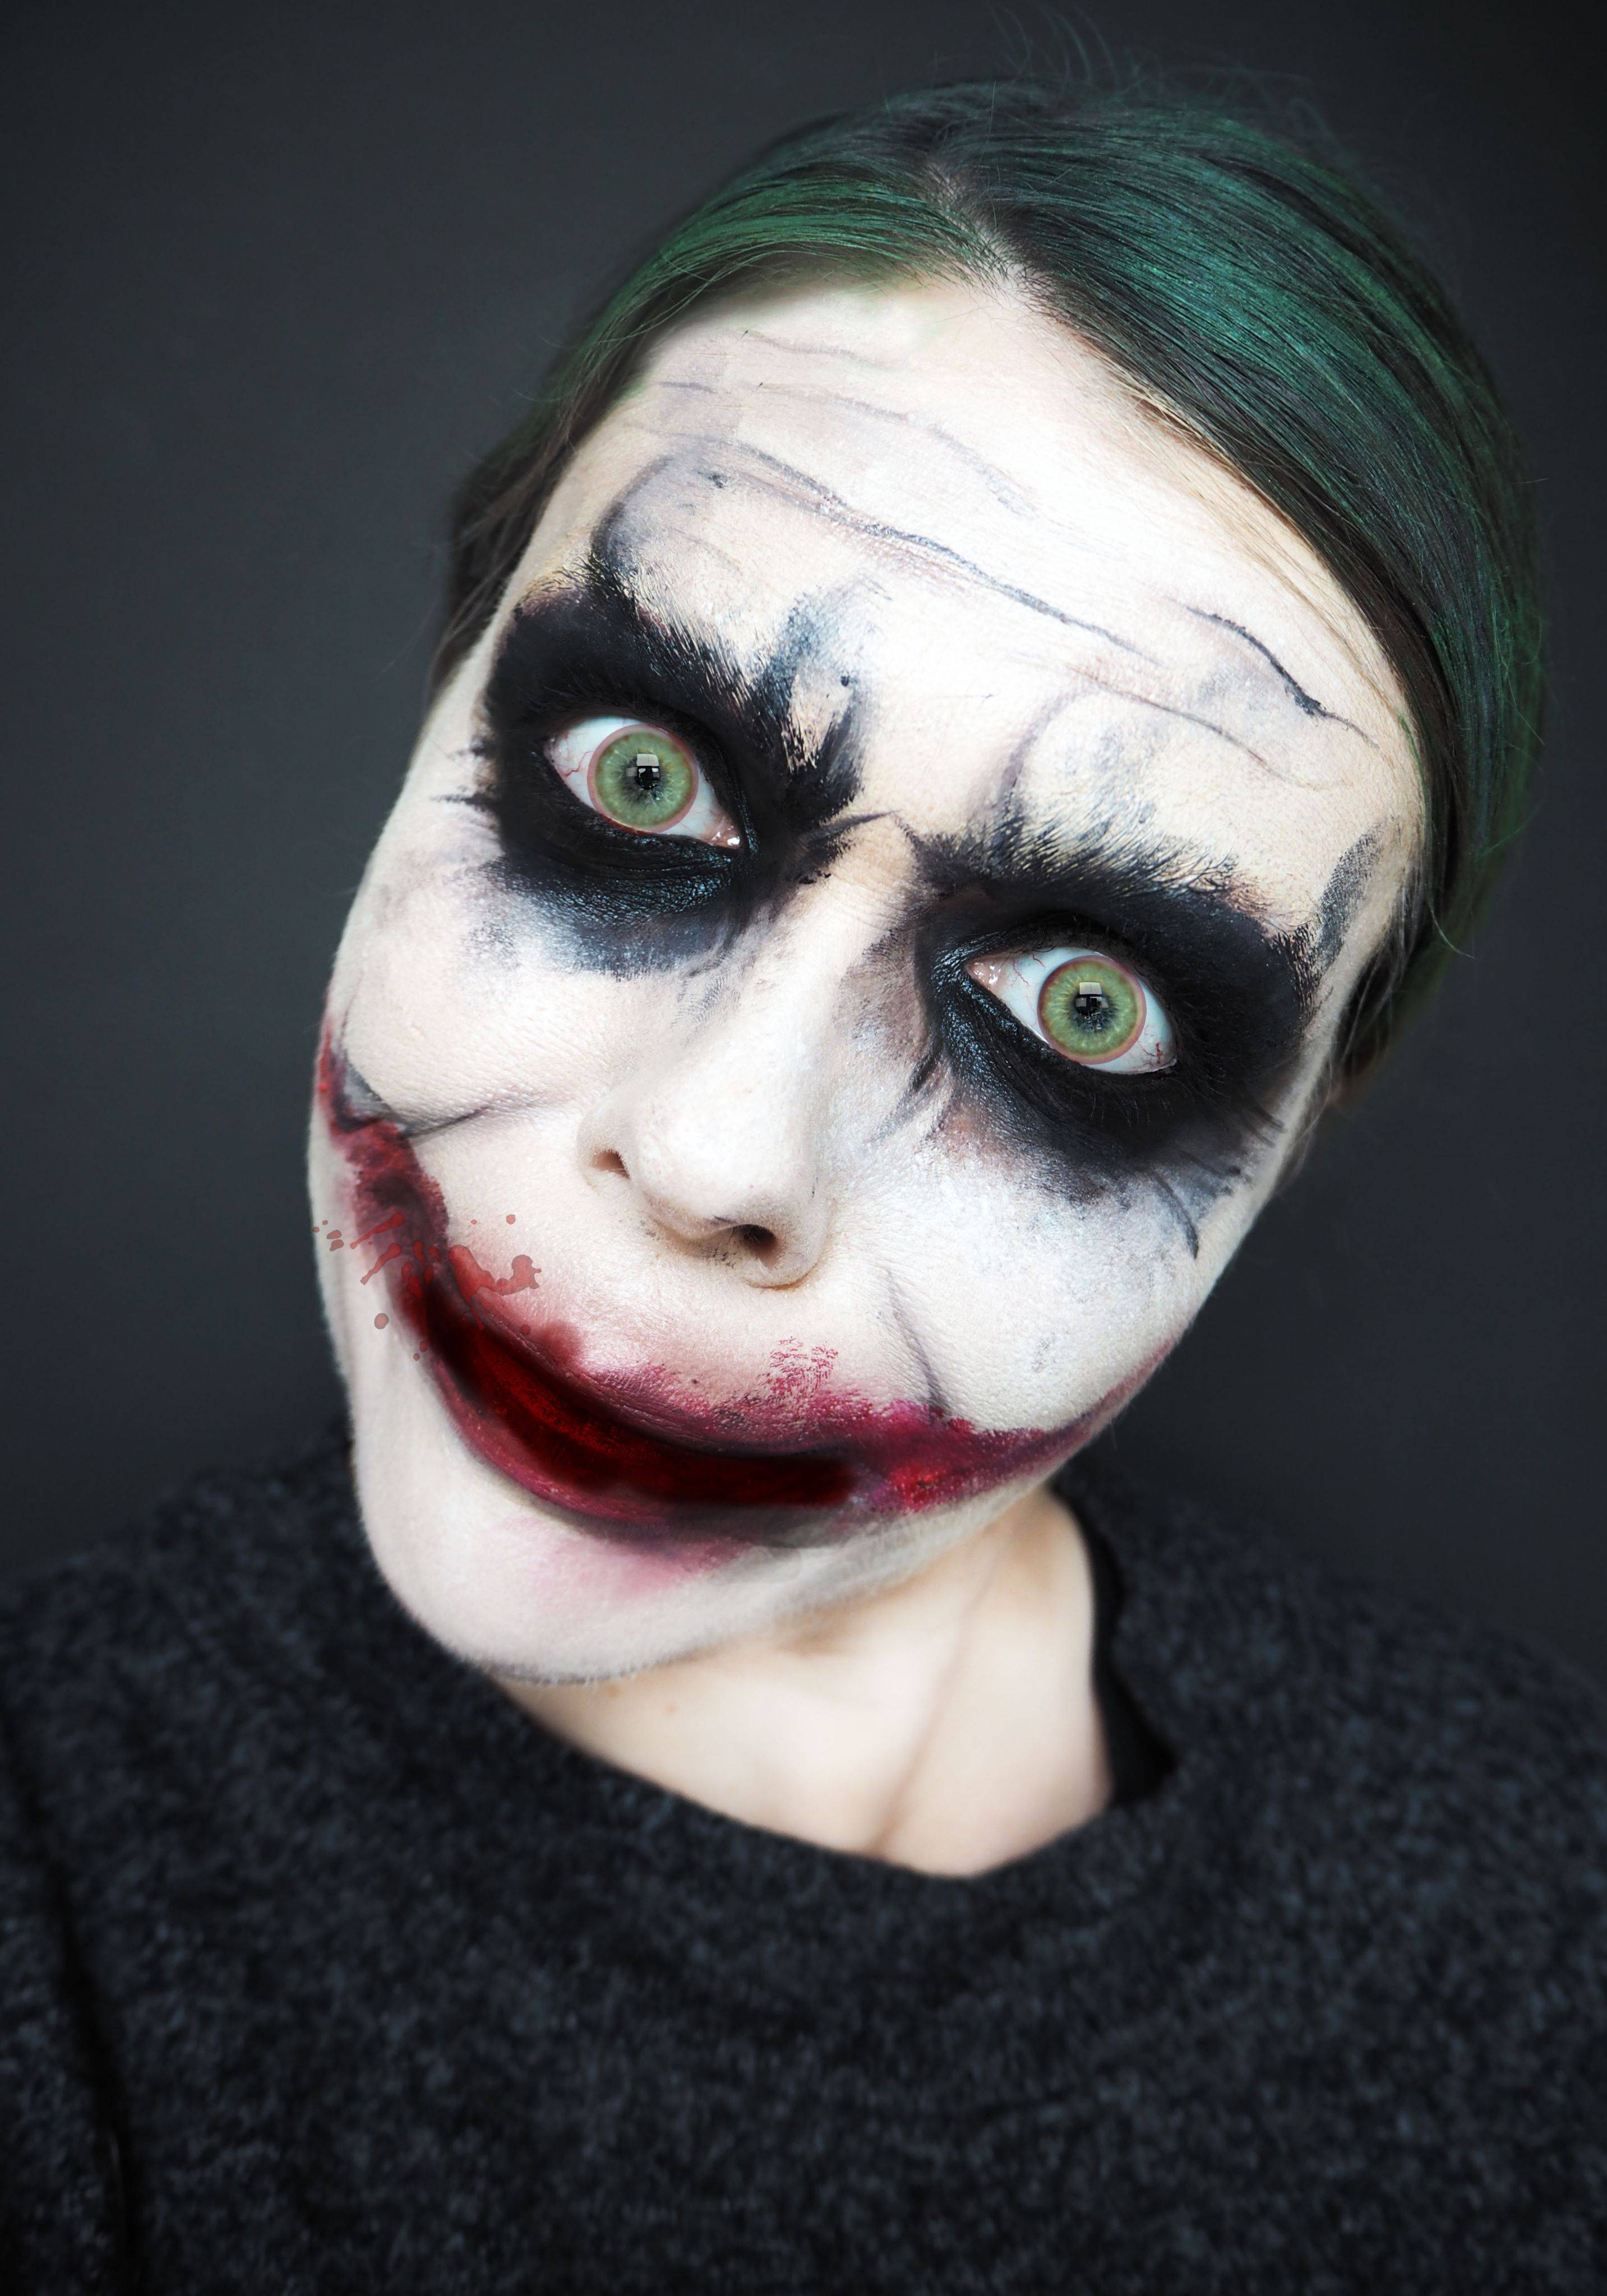 Как сделать макияж харви квинн на хэллоуин - пошаговое описание с фото и видео